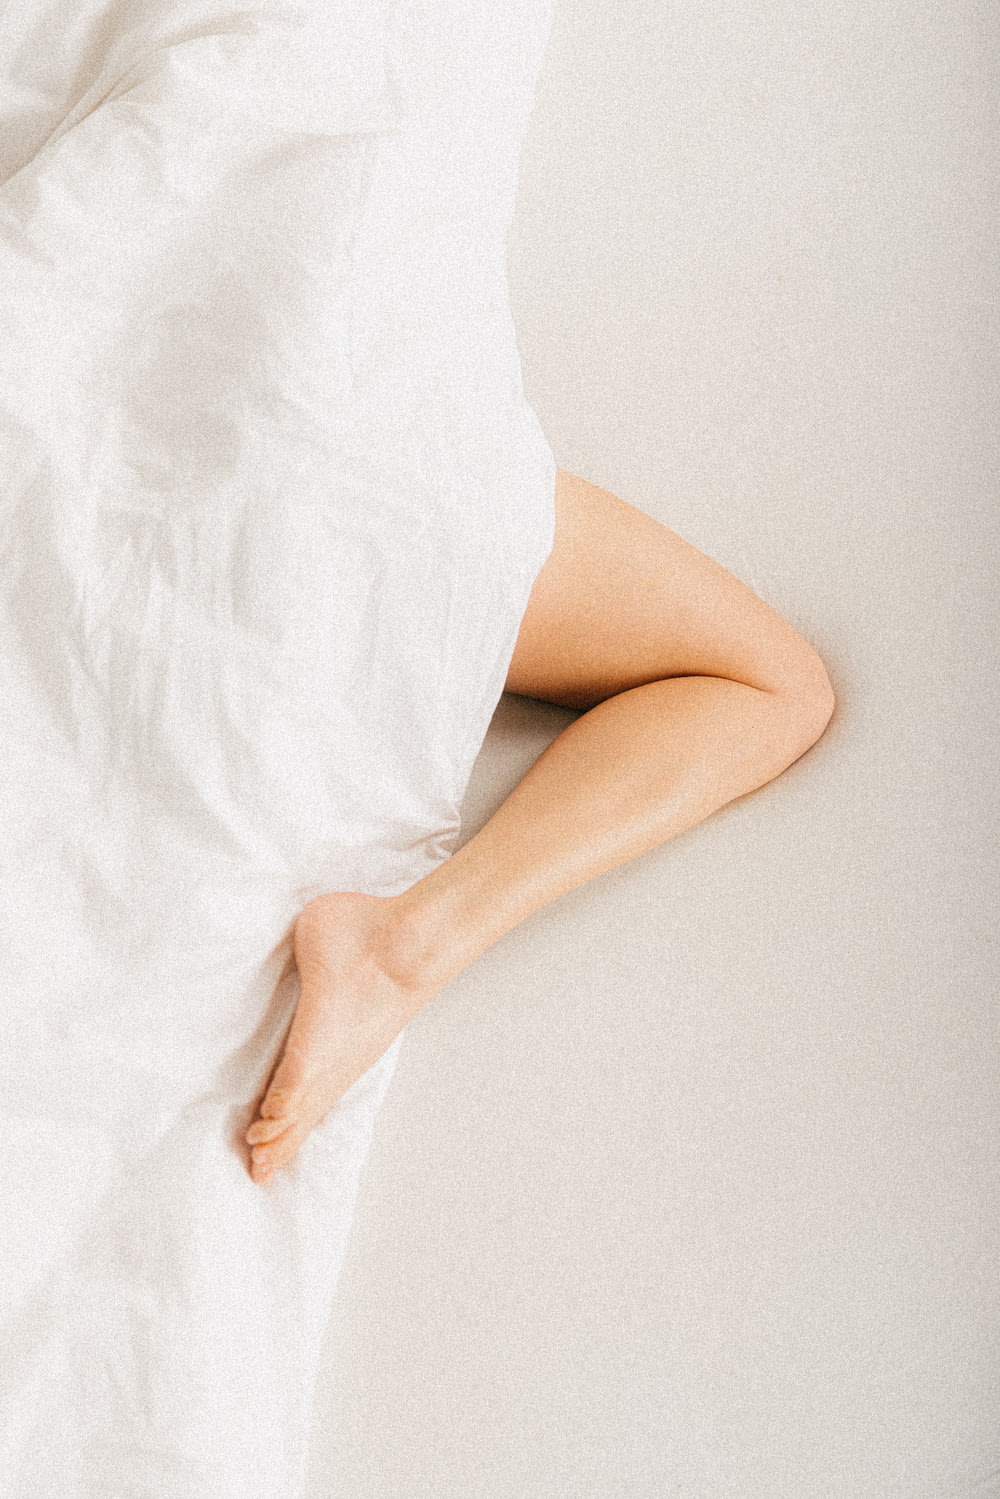 une personne allongée dans un lit avec un drap blanc